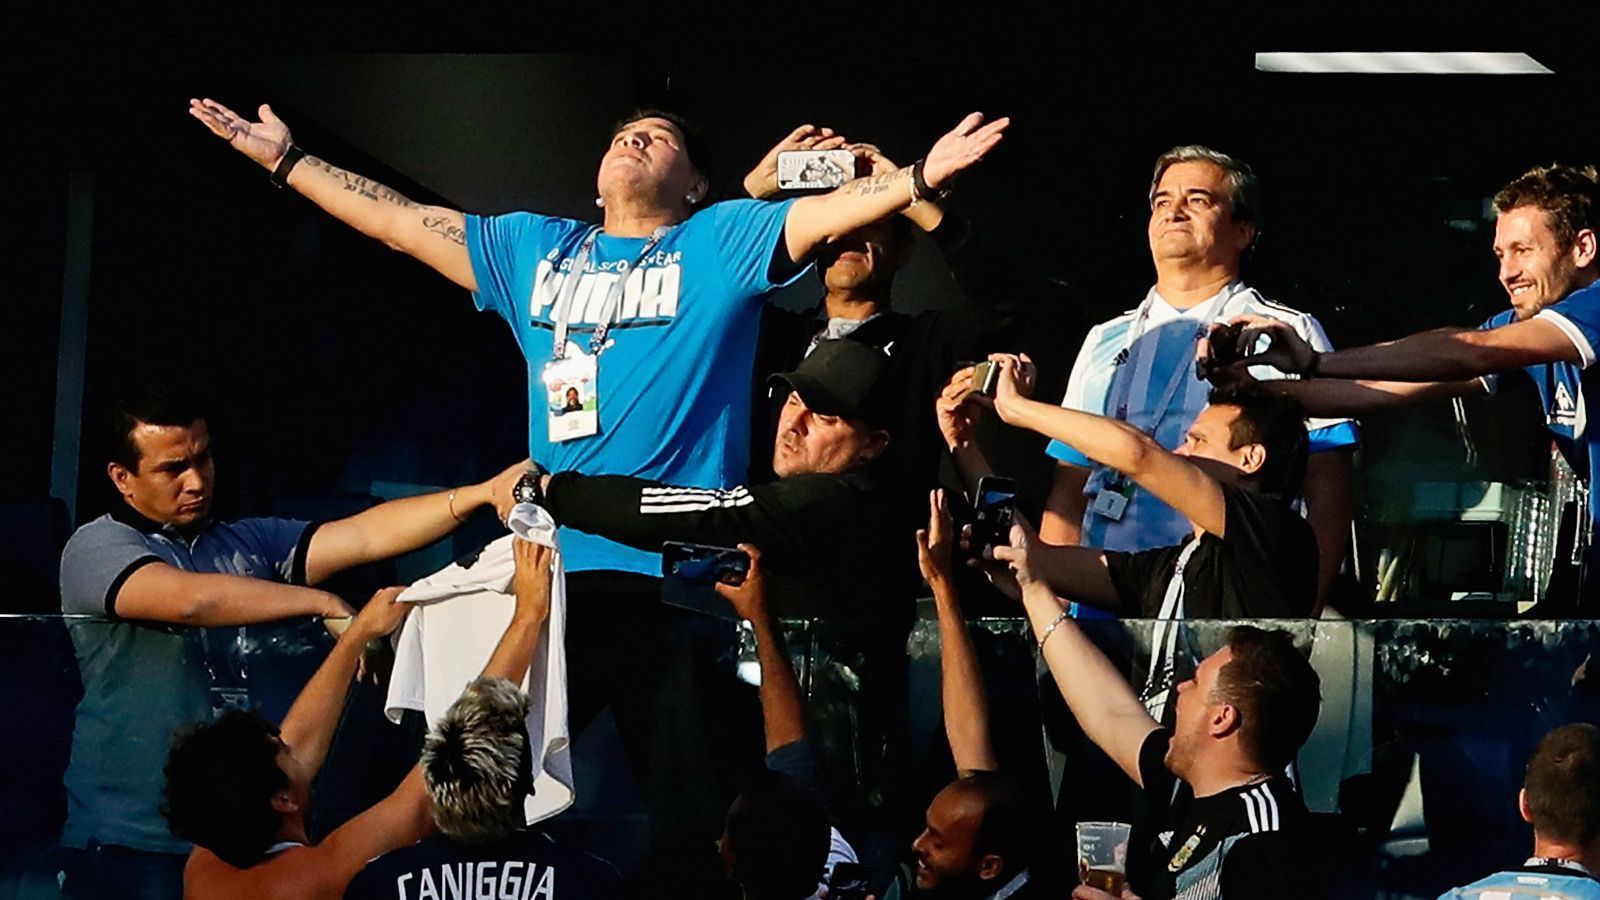 
                <strong>Maradona-Show auf Kosten der FIFA</strong><br>
                Während die Argentinier bei der WM auf dem Feld Magerkost boten, zeigte Diego Maradona auf der Tribüne stets seine ganz eigene Show. Entertainment pur, aber nicht umsonst! Die FIFA zahlt pro Spiel, das er sich im Stadion anschaut, schlappe 11.300 Euro. Damit nicht genug: Für jedes weitere offizielle Event, dass Maradona für die FIFA besucht, fließen weitere 11.300 Euro in seine Tasche - manchmal sogar mehr, wenn die Sponsoren noch einen Bonus oben drauf legen. Und damit dem Argentinier in der spielfreien Zeit auch nicht langweilig wird, gibt es für jeden Tag noch ca. 1.700 Euro Handgeld. Maradona hat damit die besten Bonus-Verhandlungen geführt. Auch Ex-Stars wie Samuel Eto'o, Ronaldo, Iker Casillas, Carles Puyol oder Xavi sind in Russland auf Kosten der FIFA dabei, kassieren aber nicht so viel wie die Hand Gottes.
              